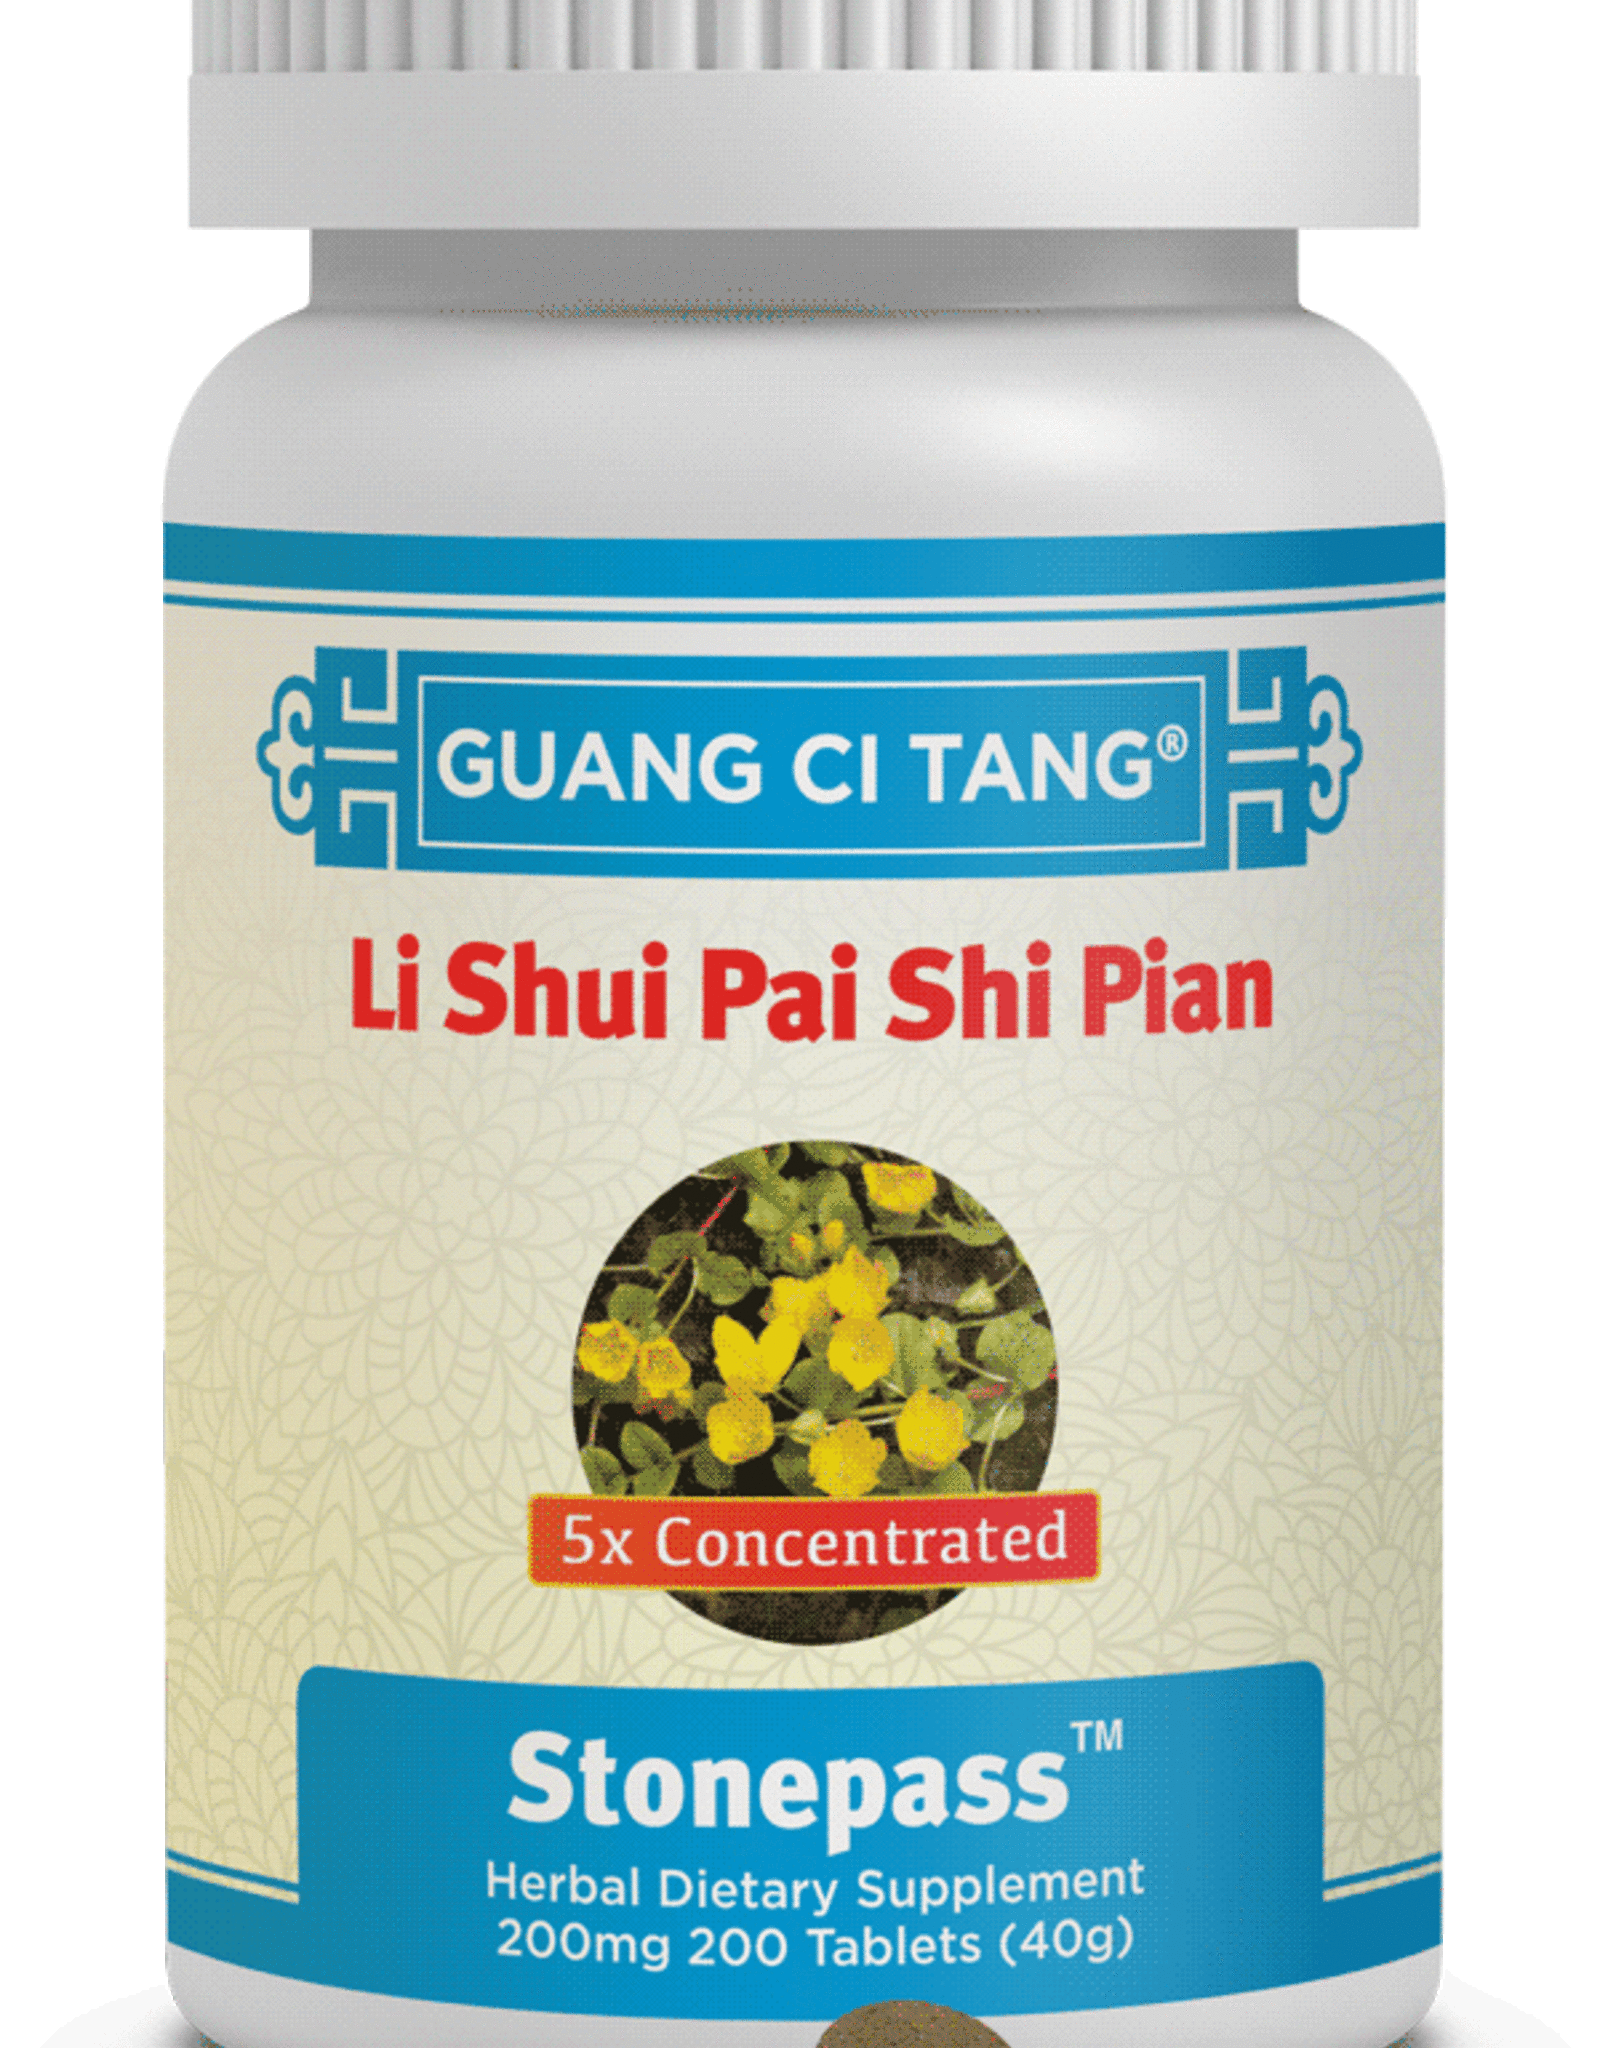 Guang Ci Tang Li Shui Pai Shi Pian - Stonepass